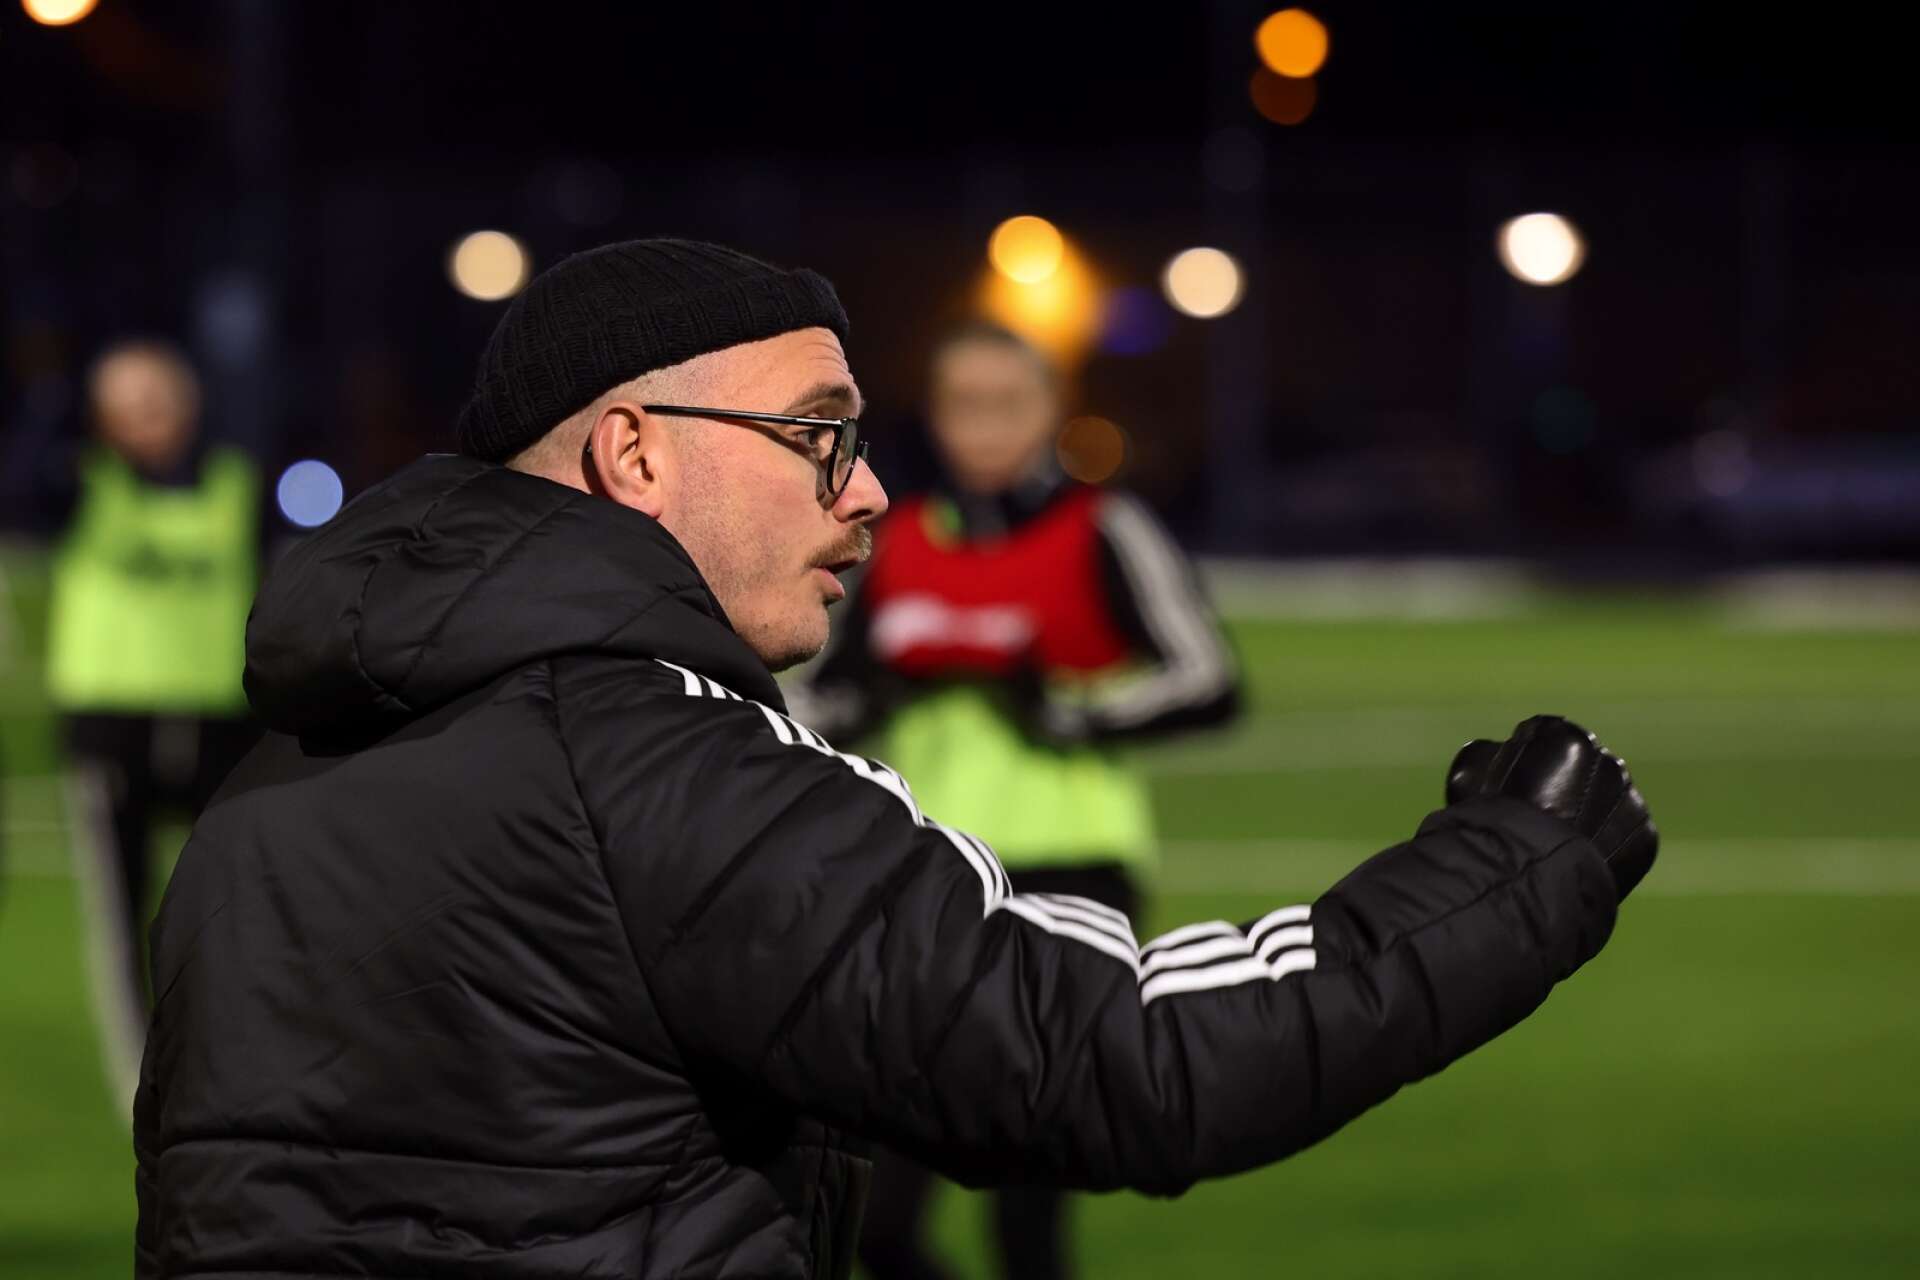 Nye LFK-tränaren Robin Carlén är inte nöjd med de träningsförutsättningar som elitettan-klubben har.